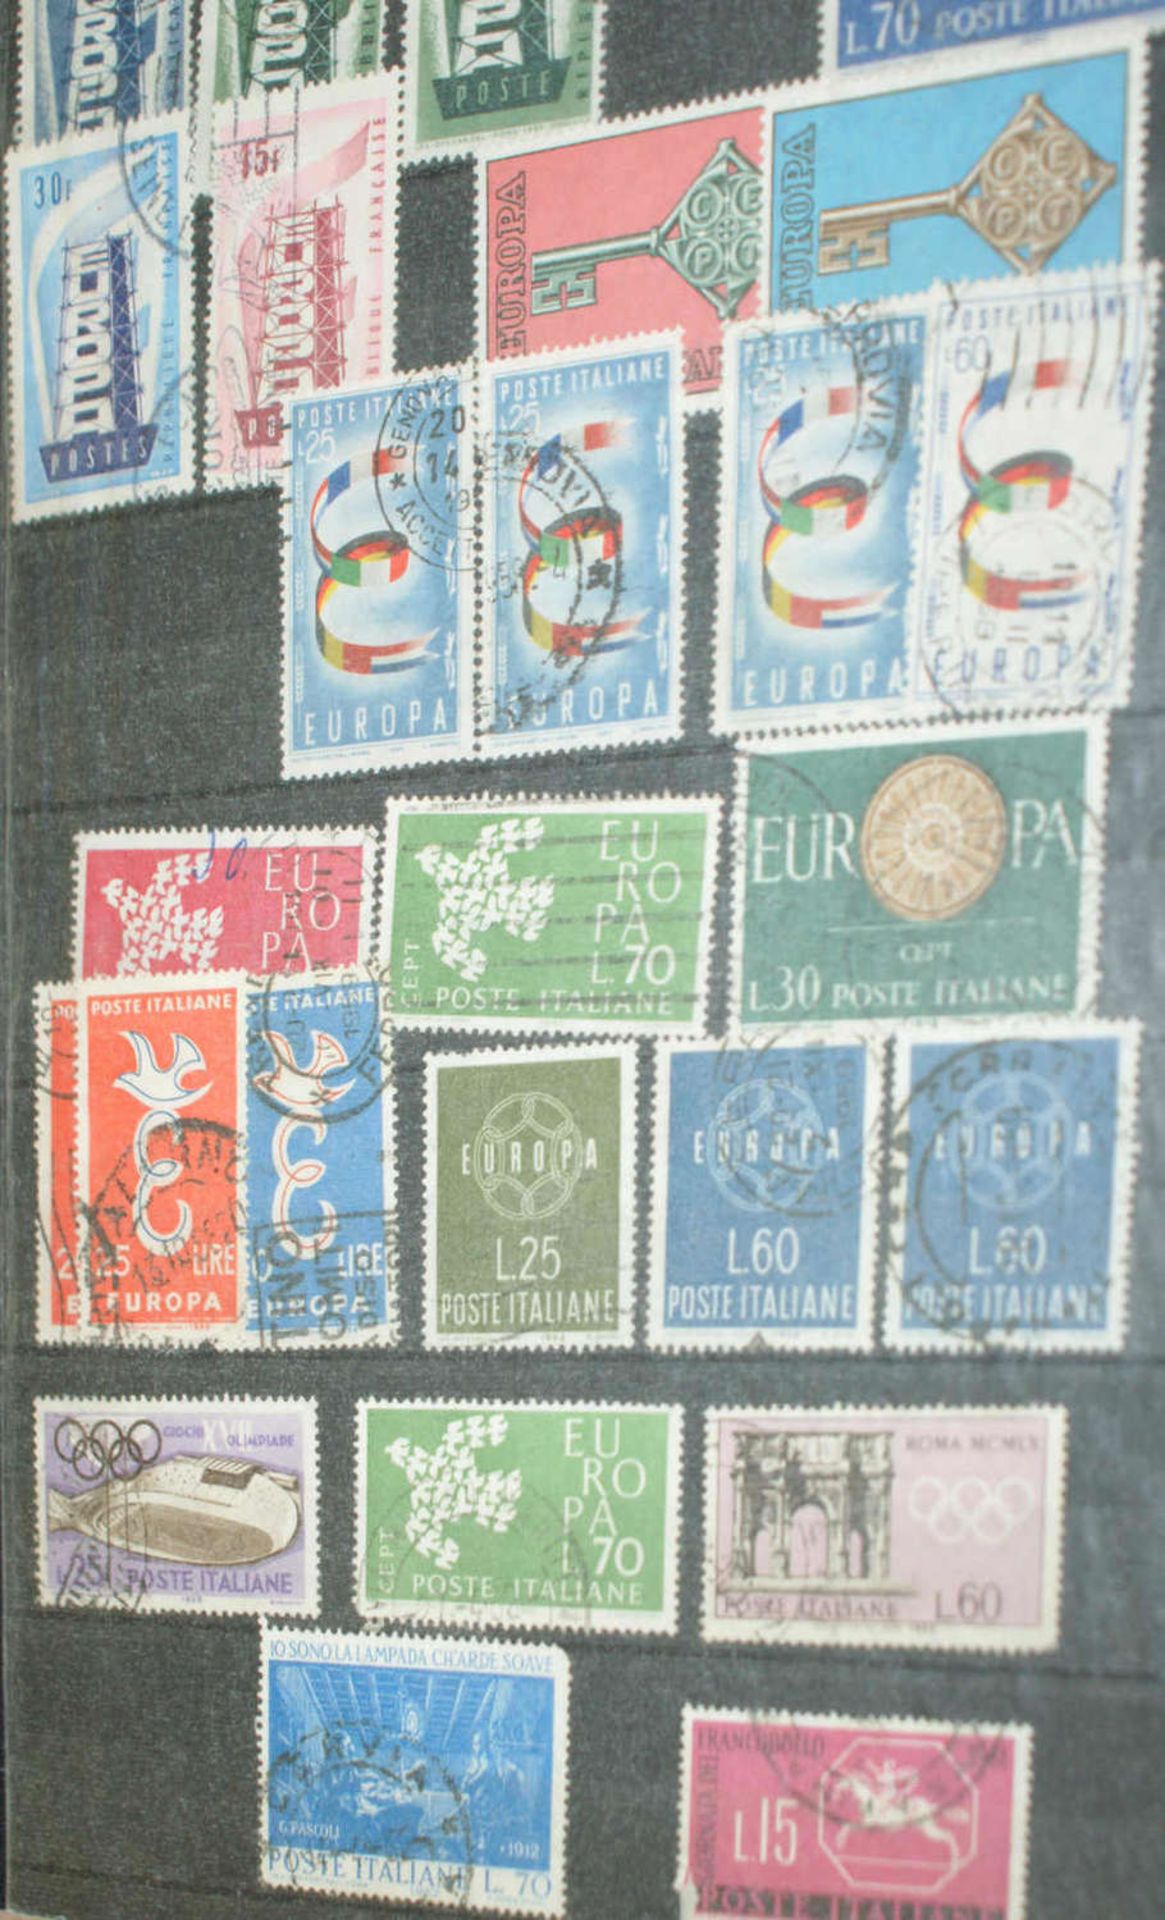 Europa - Briefmarken Dubletten Konvolut, bestehend aus 9 Alben, teilweise schlecht gelagert. - Bild 3 aus 5